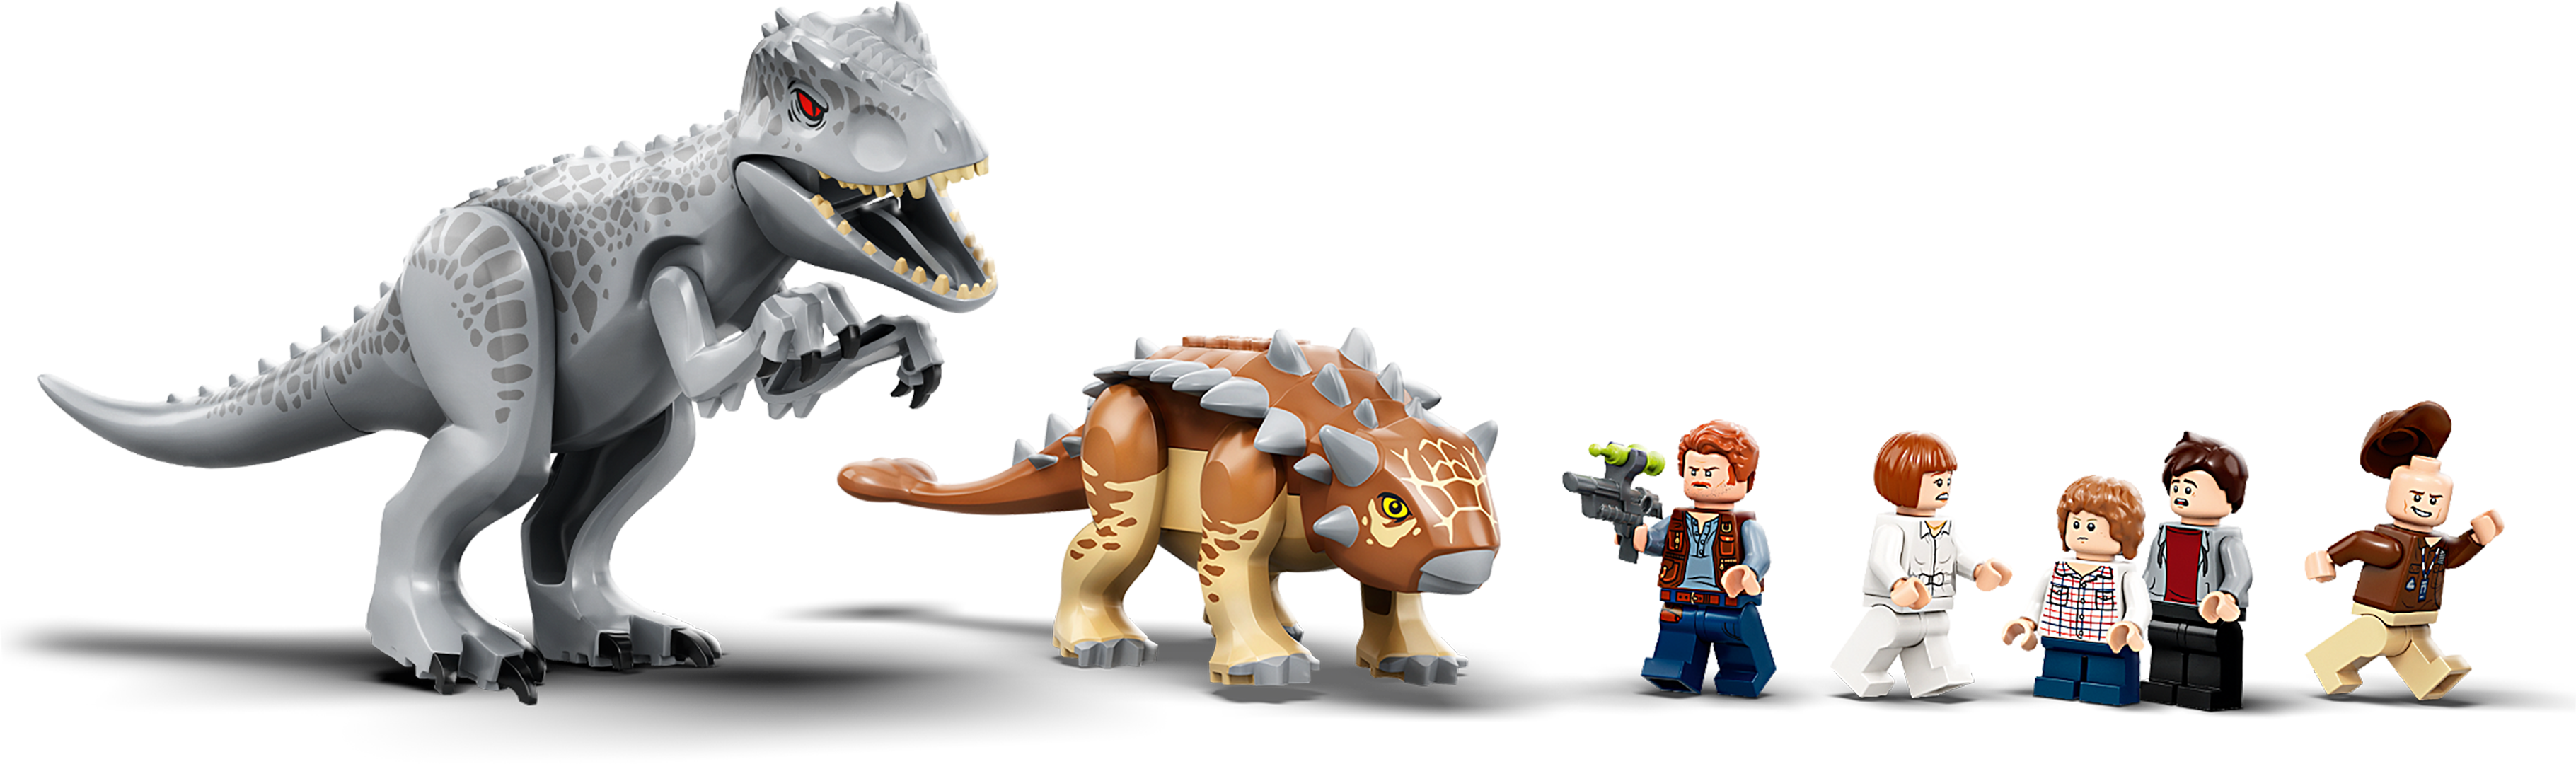 2020 Neu Jurassic Park Dinosaur World Minifigures Tyrannosaurus Indominus Rex 